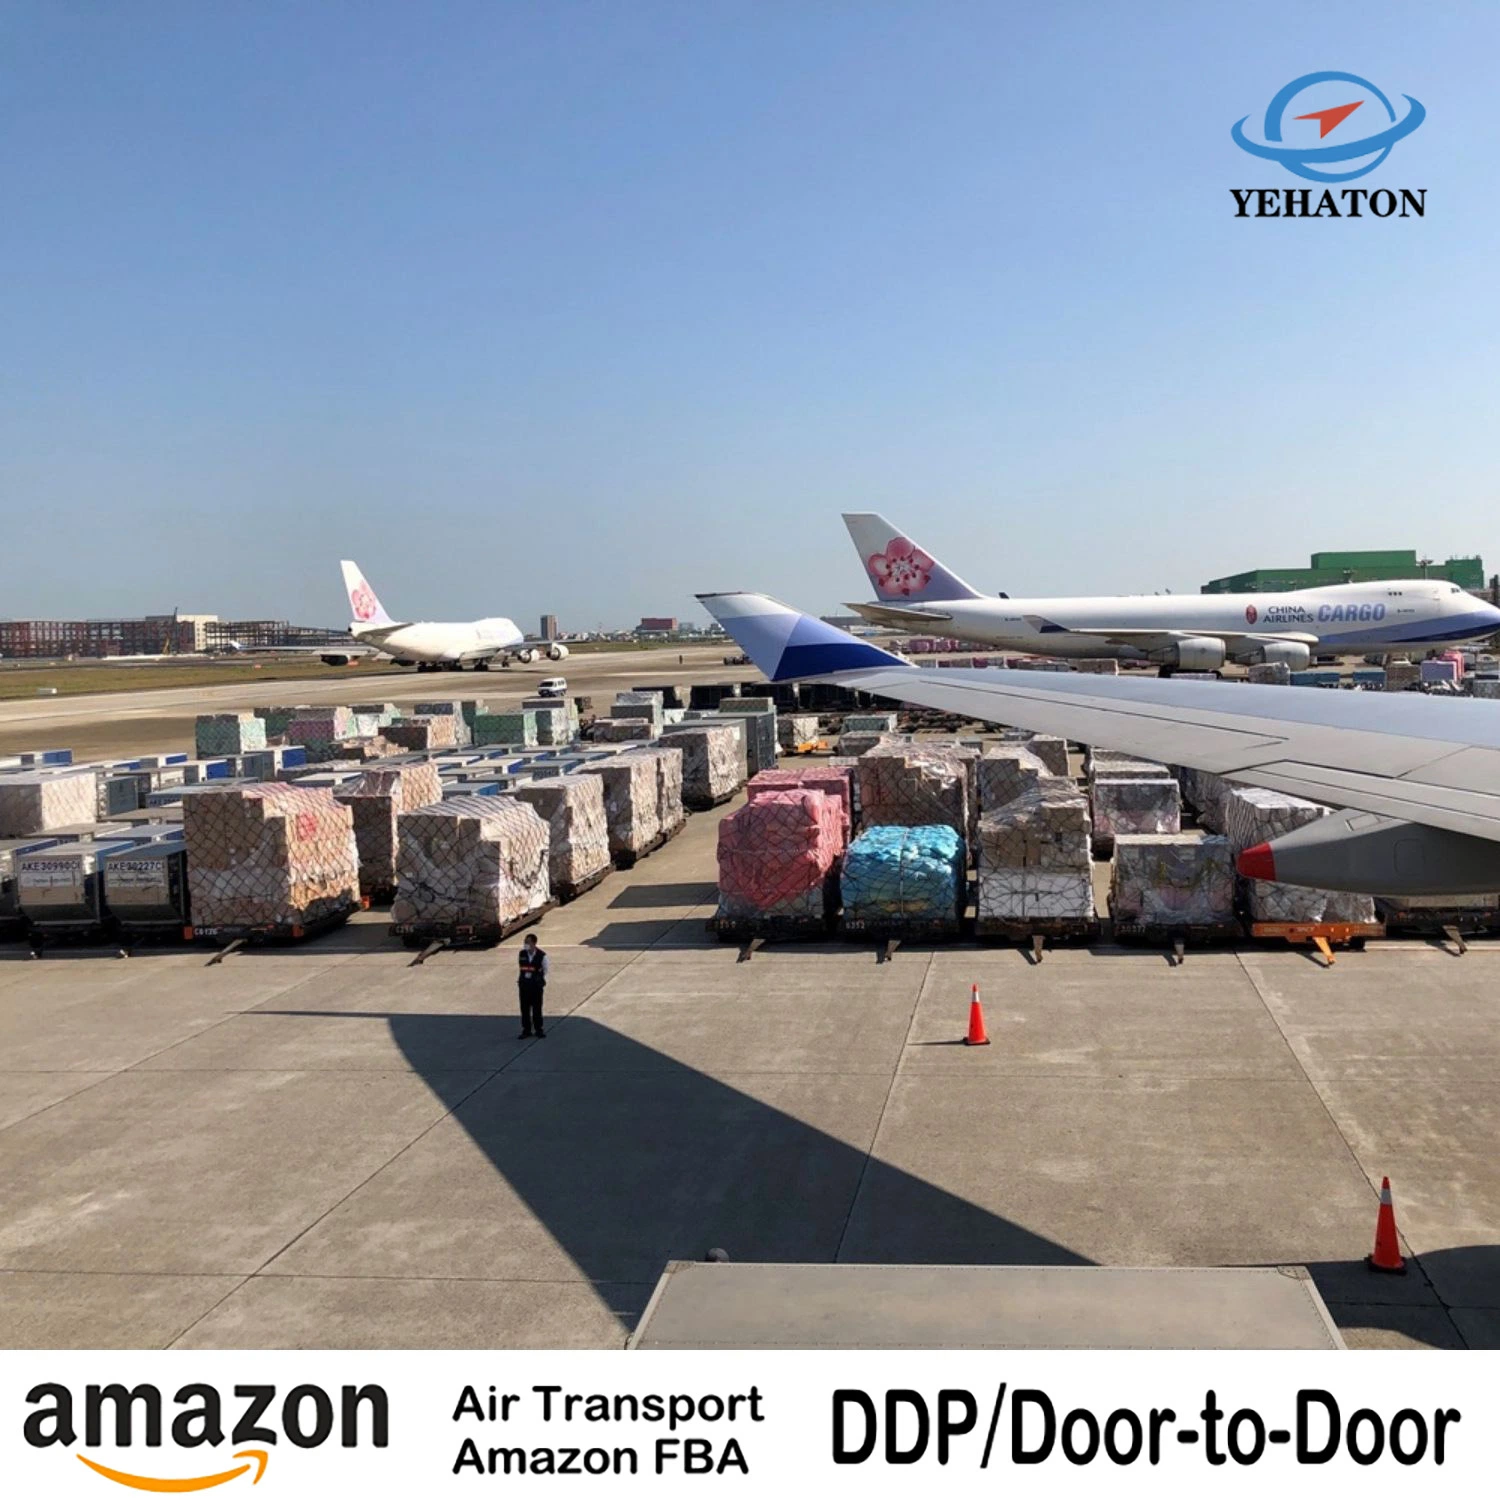 خدمة شحن Amazon Fba من الصين إلى المملكة المتحدة/ألمانيا، شركة علي بابا إكسبريس لبيع الجملة والسوقيات في البحر/الشحن الجوي Forwarder